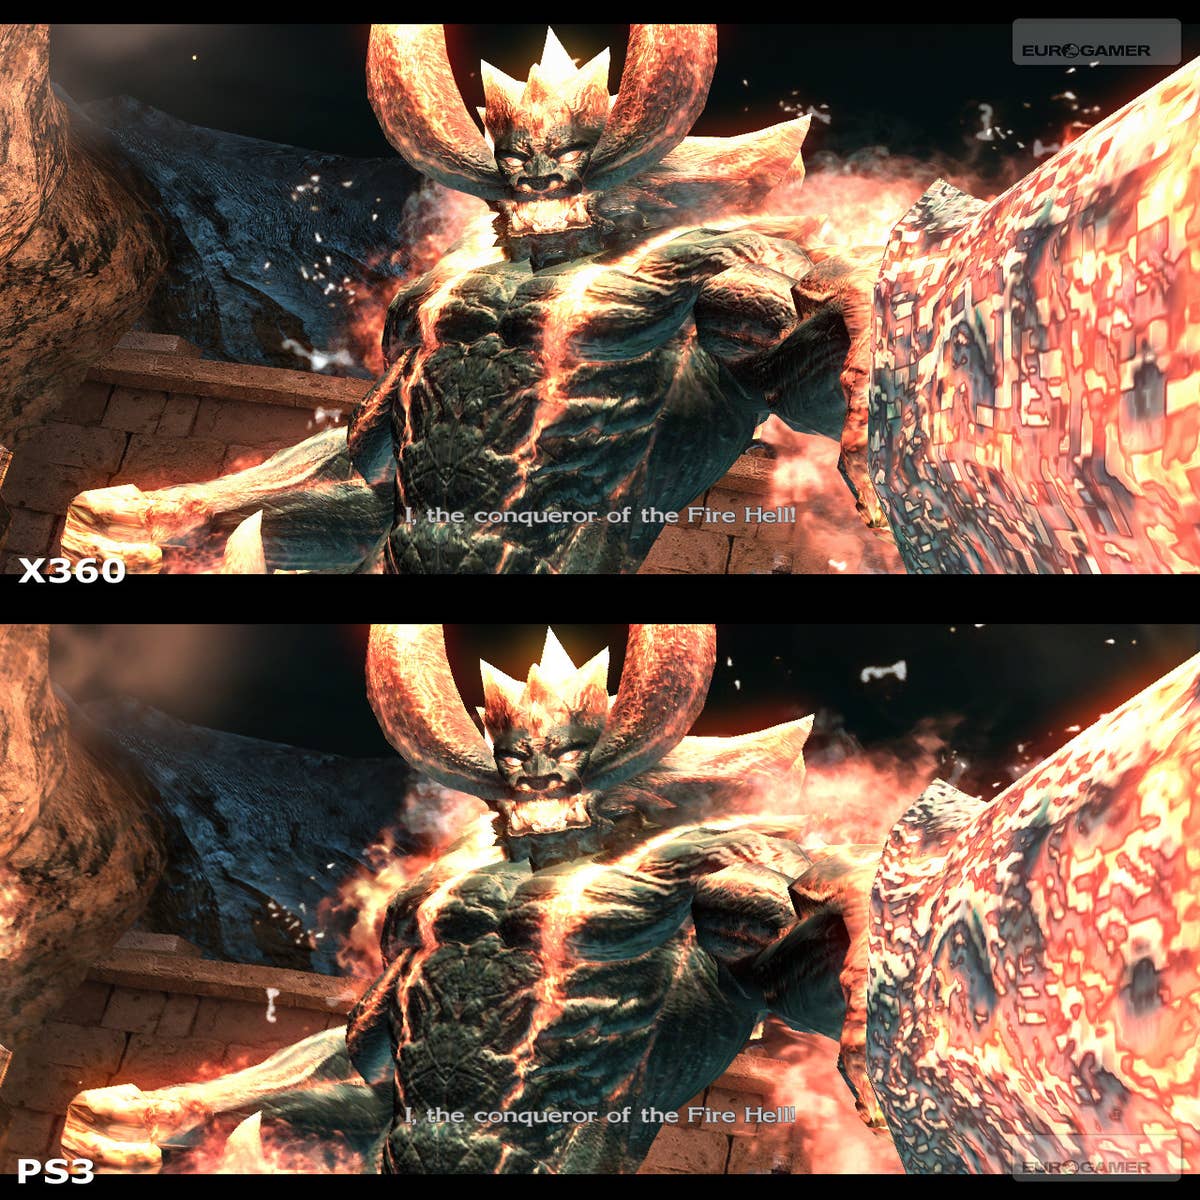 Devil May Cry (2001) PS2 vs PS3 vs XBOX 360 vs Switch vs PS4 vs